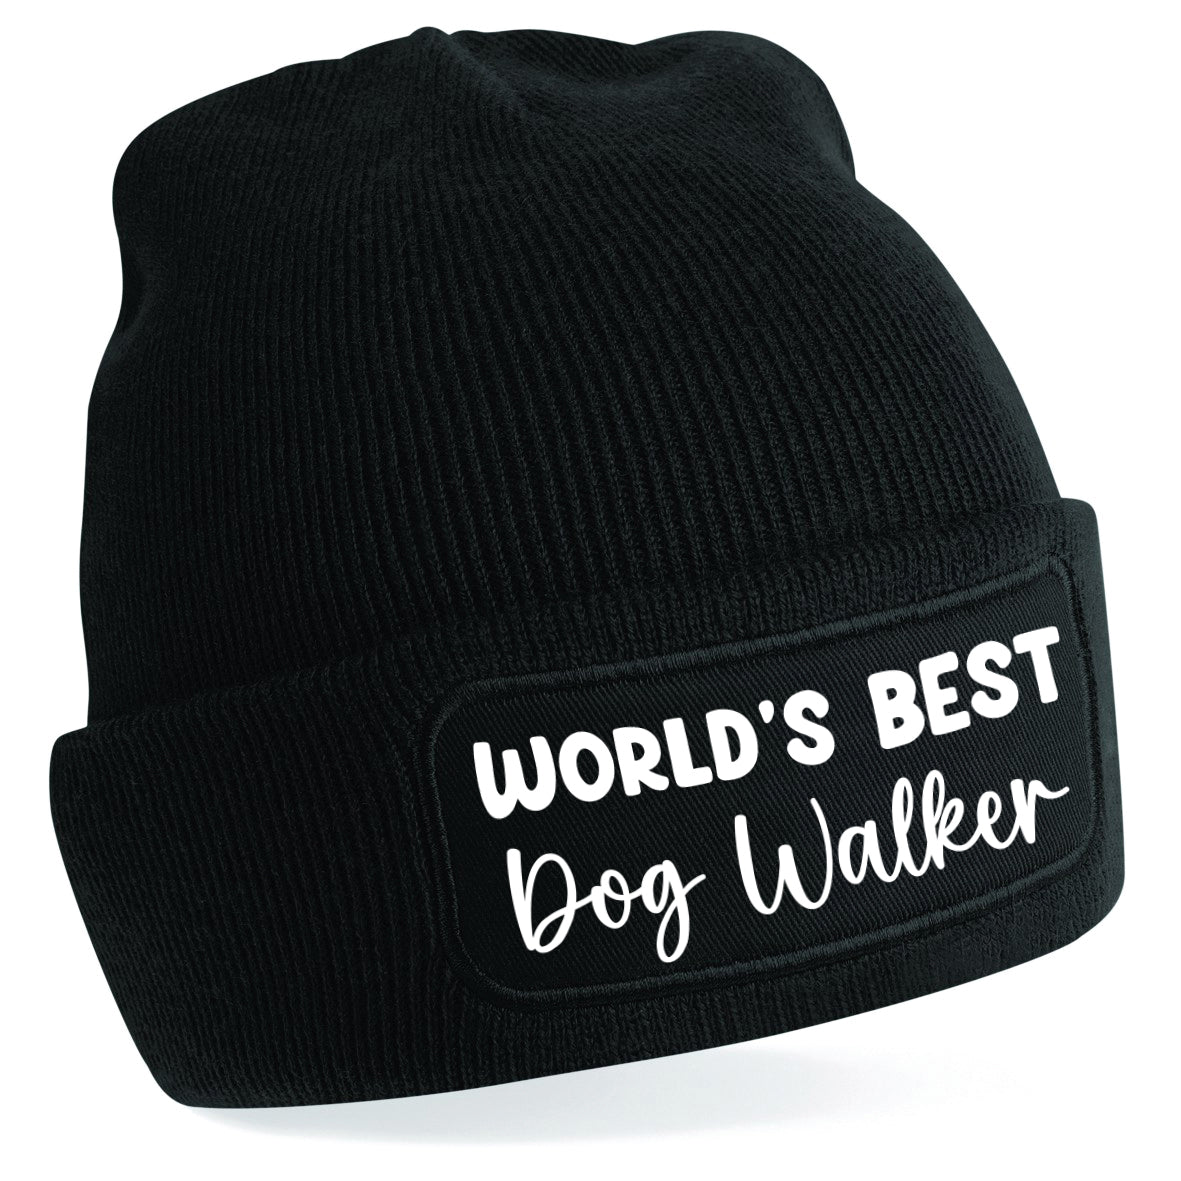 World's Best Dog Walker Beanie Hat